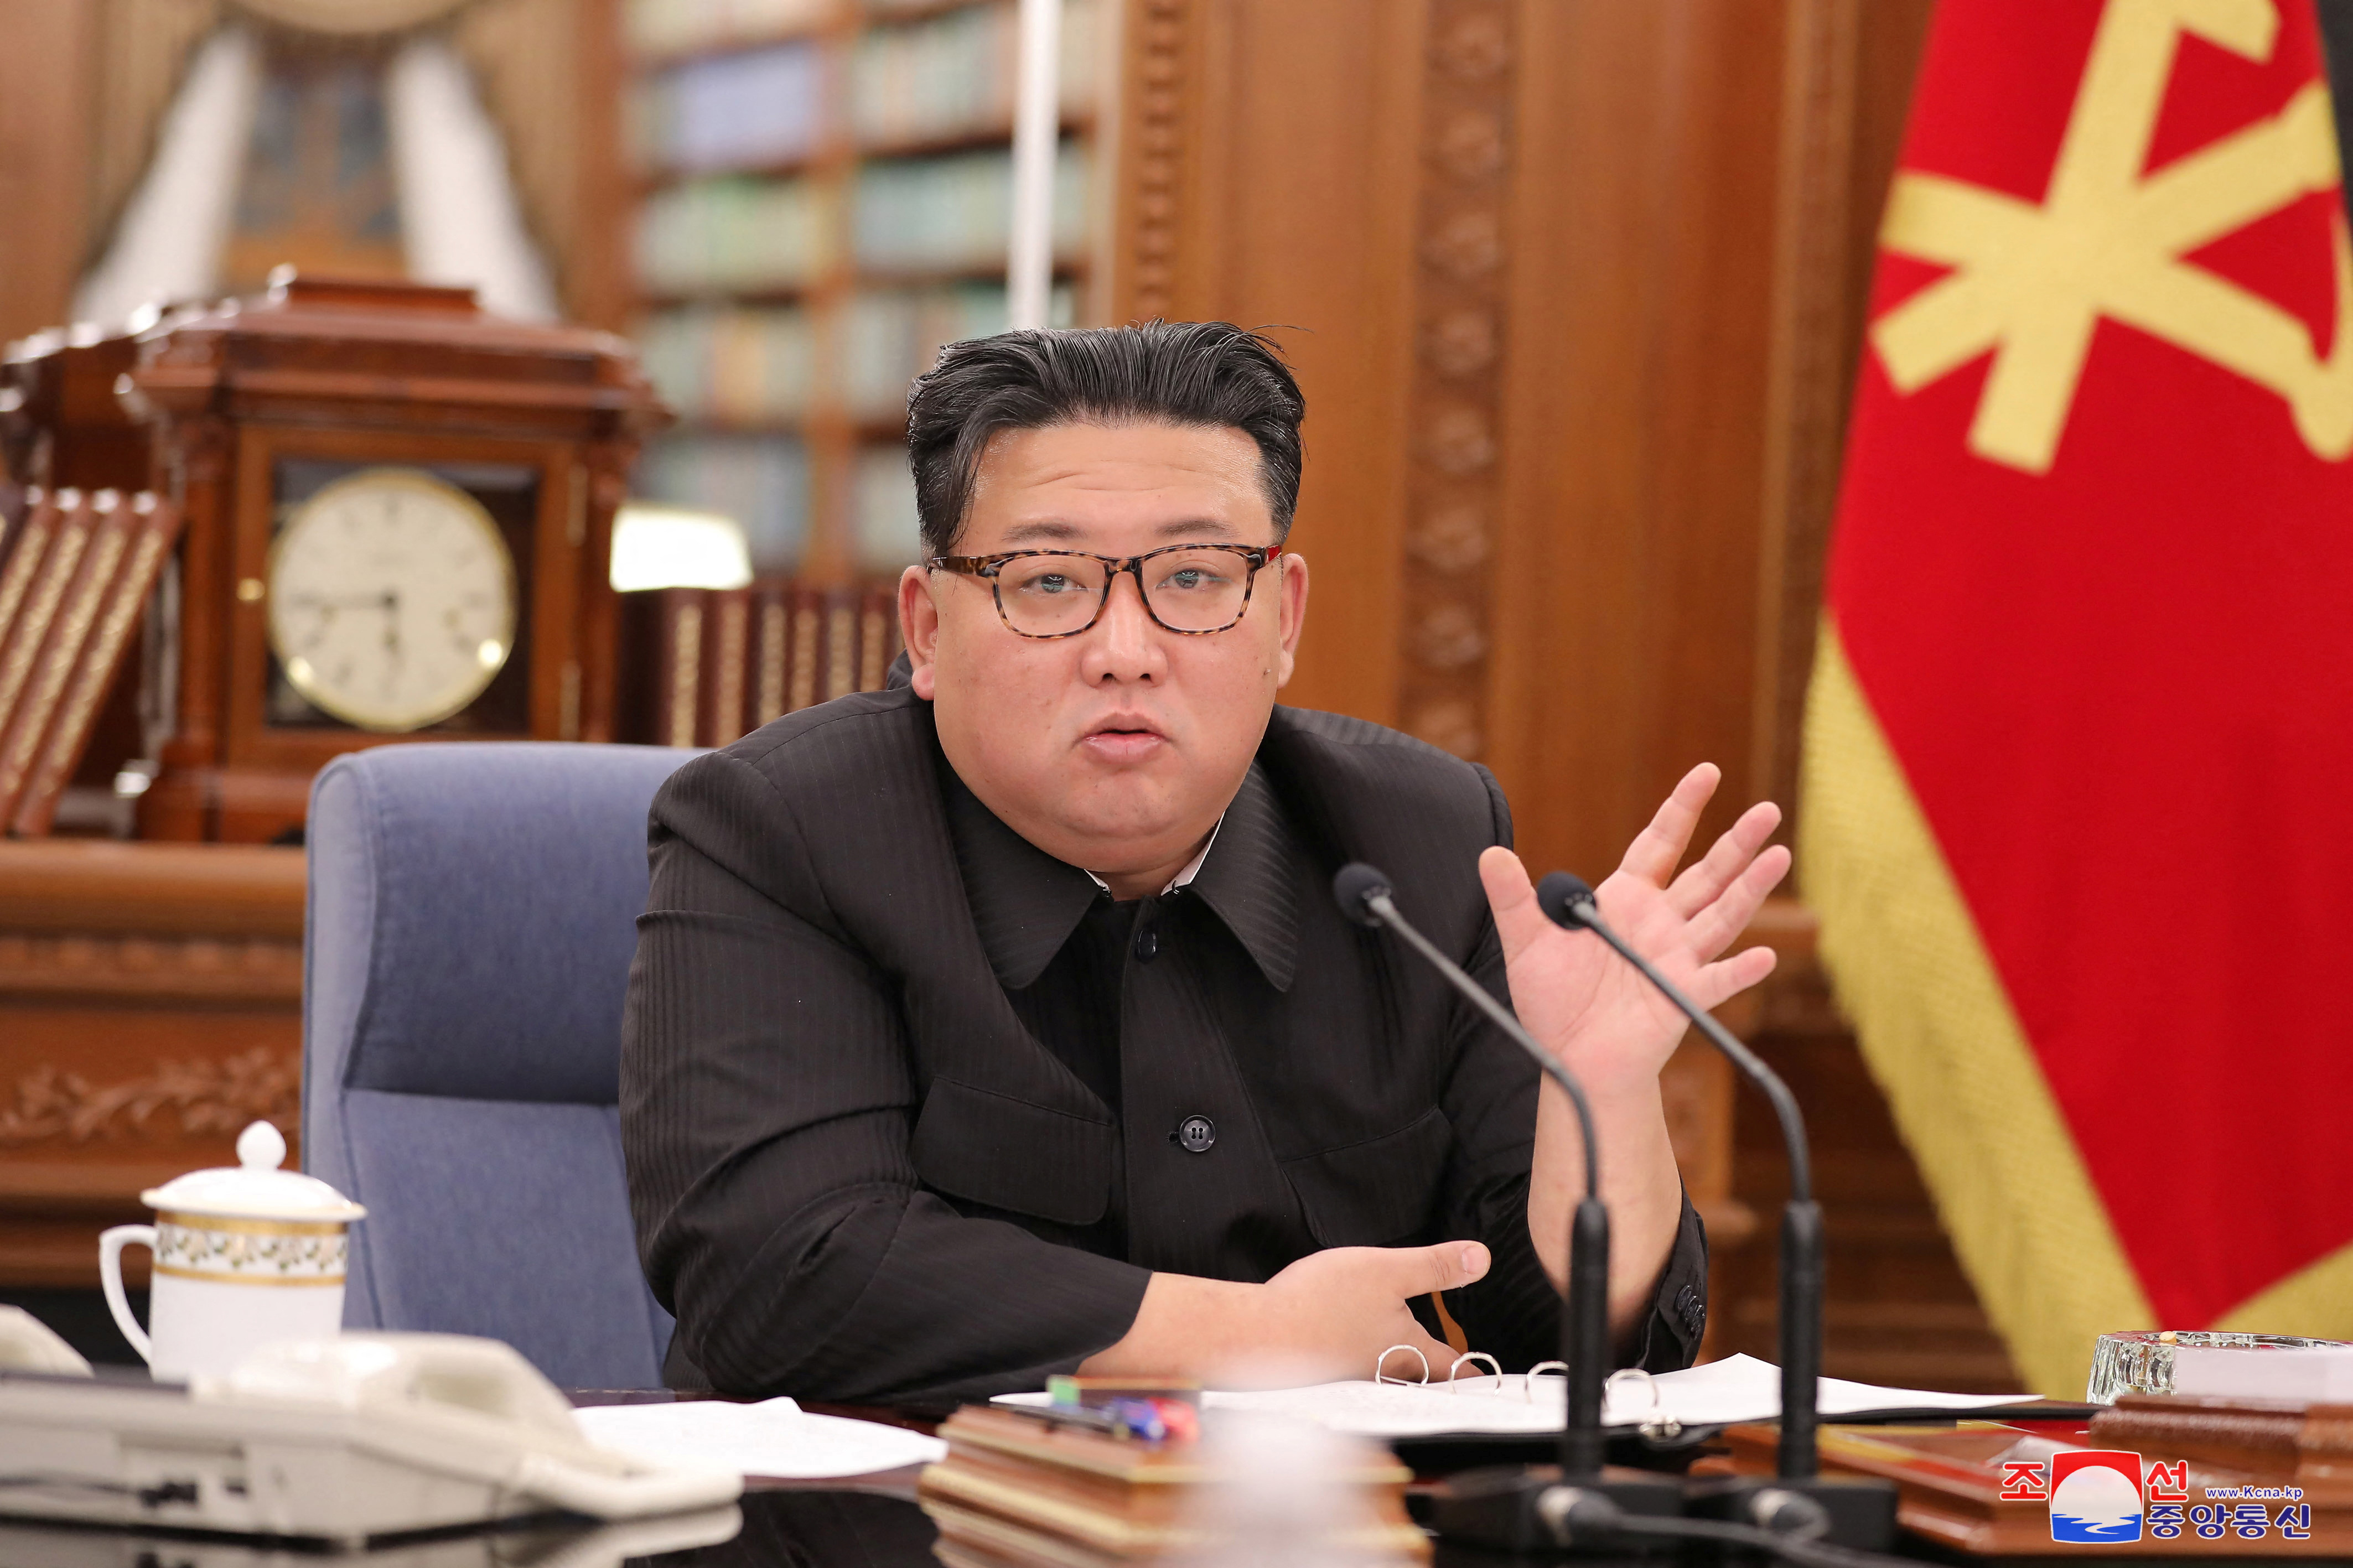 El líder norcoreano Kim Jong Un preside la reunión ampliada del Secretariado del Comité Central del Partido de los Trabajadores de Corea en Pyongyang, Corea del Norte, el 27 de junio de 2022, en esta foto publicada por la Agencia Central de Noticias de Corea (KCNA) del país. KCNA vía REUTERS 